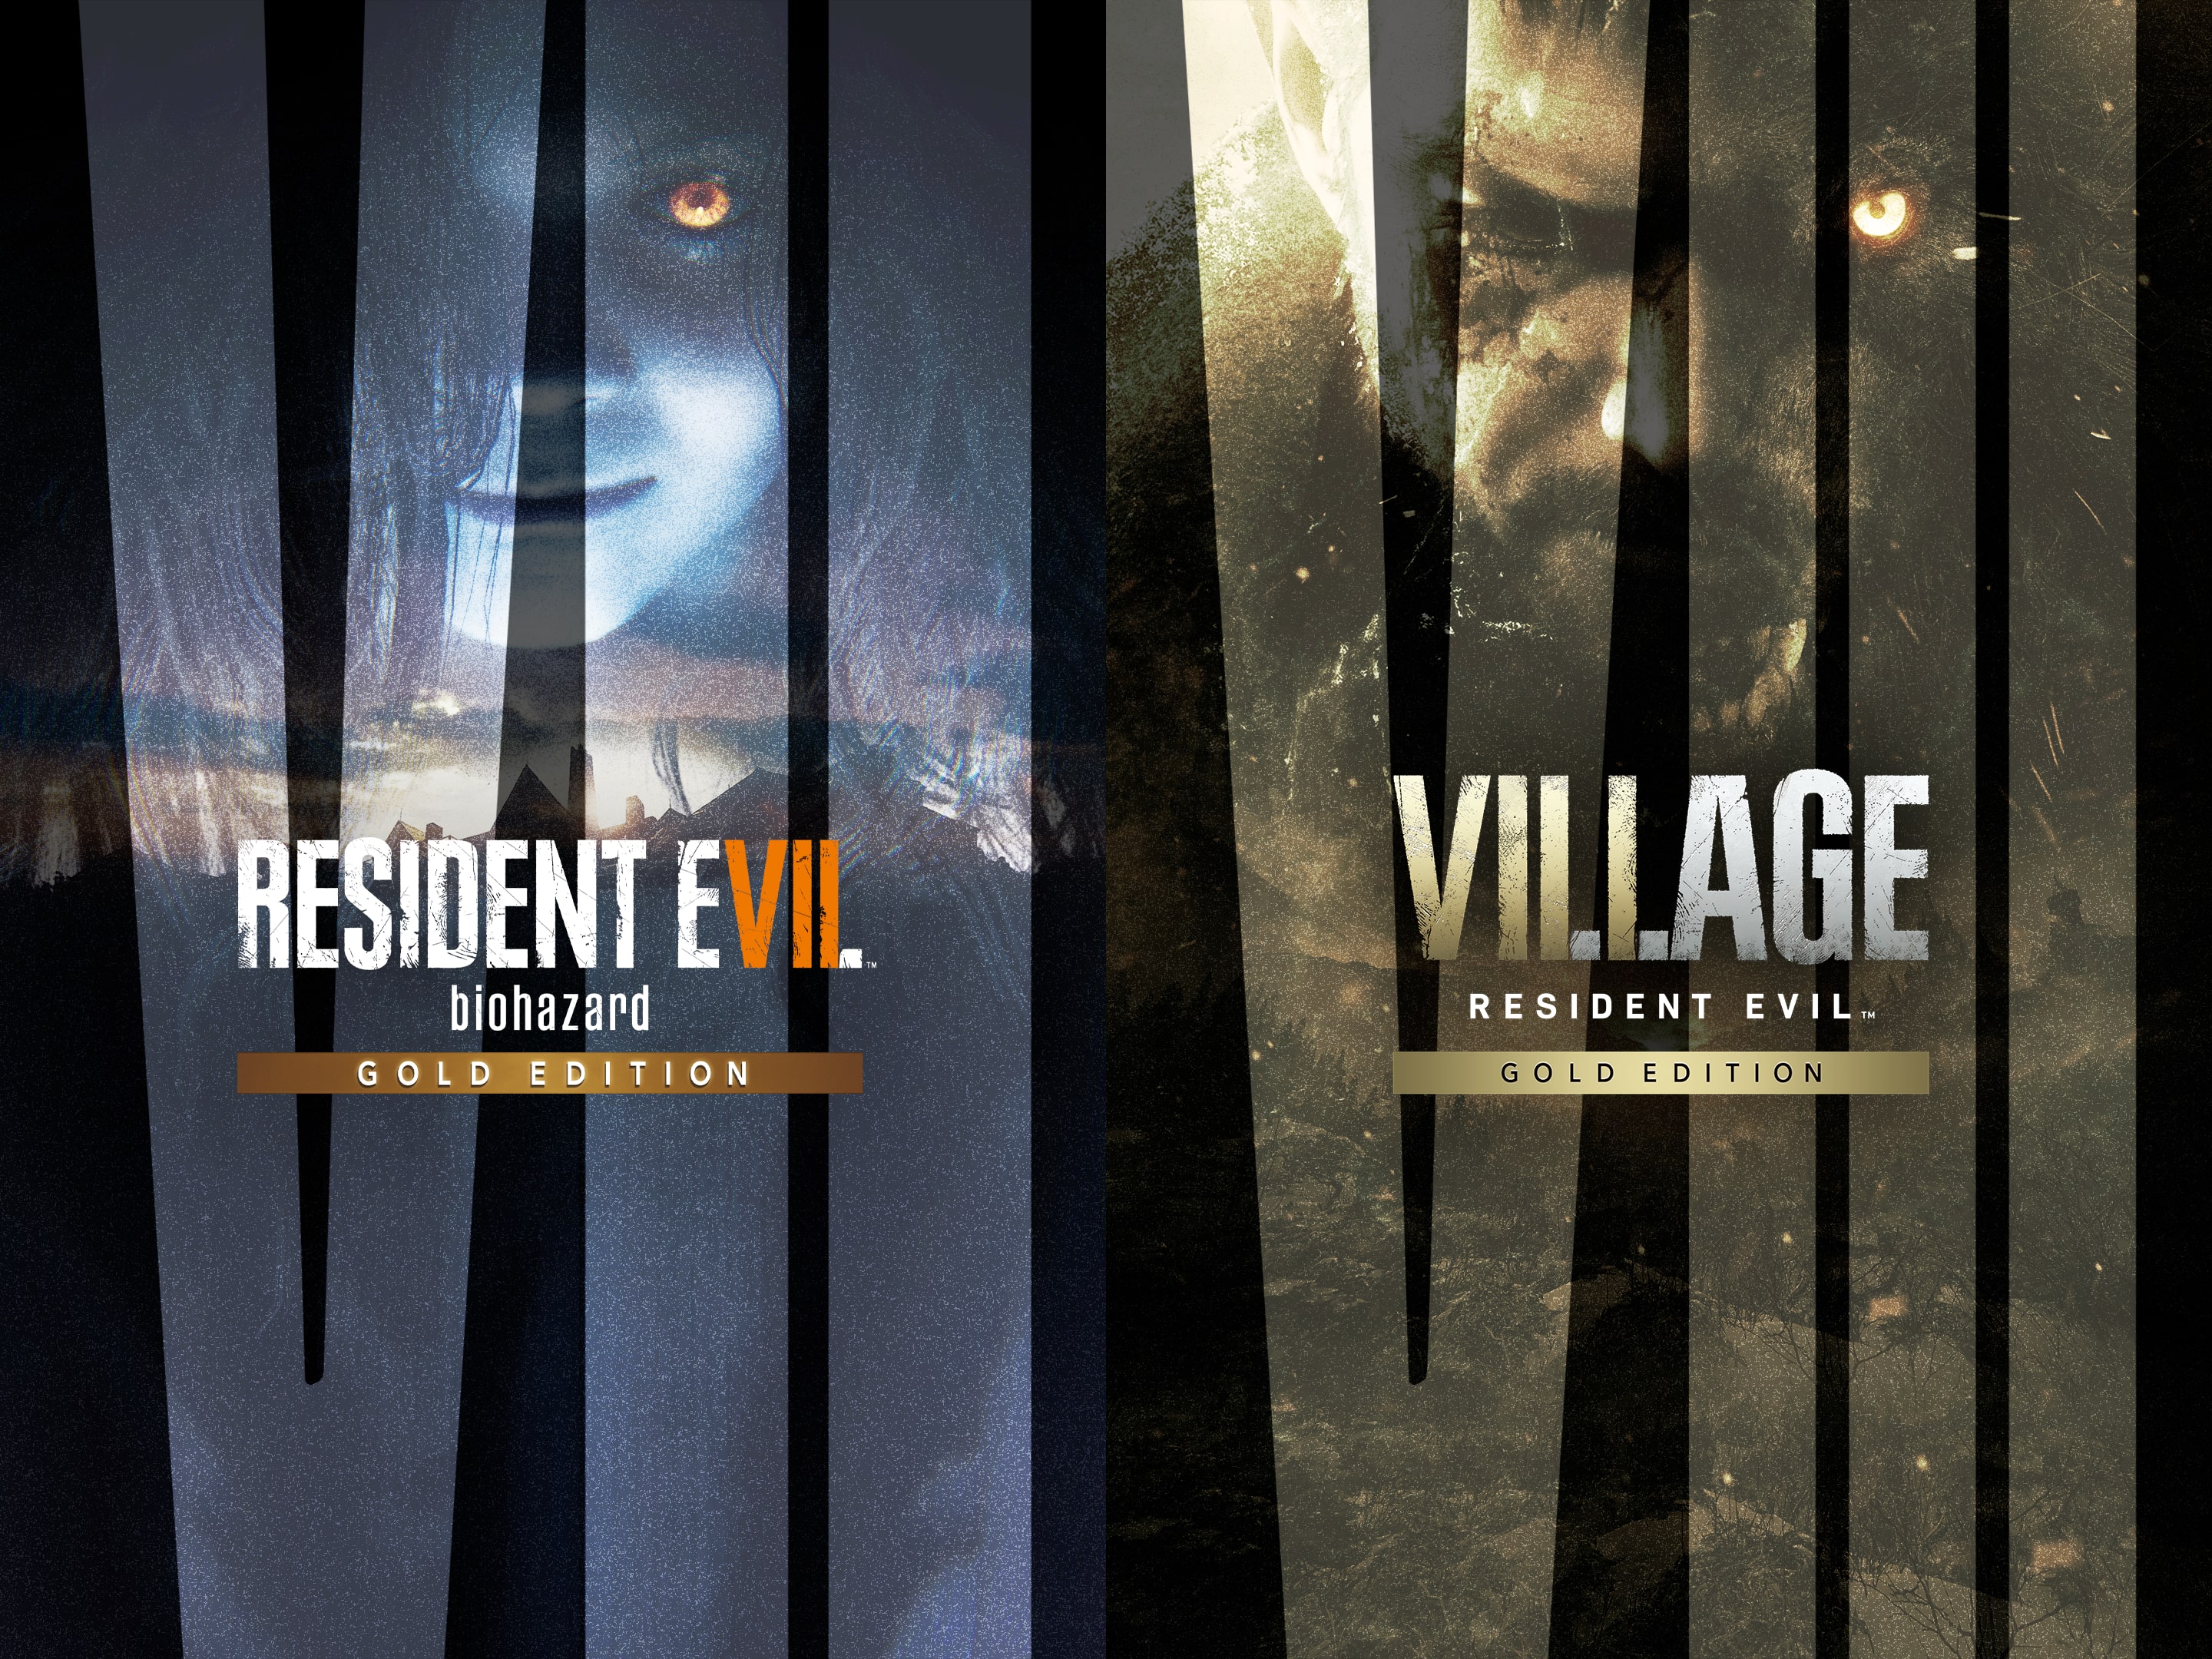 Resident Evil 7 vs Resident Evil Village